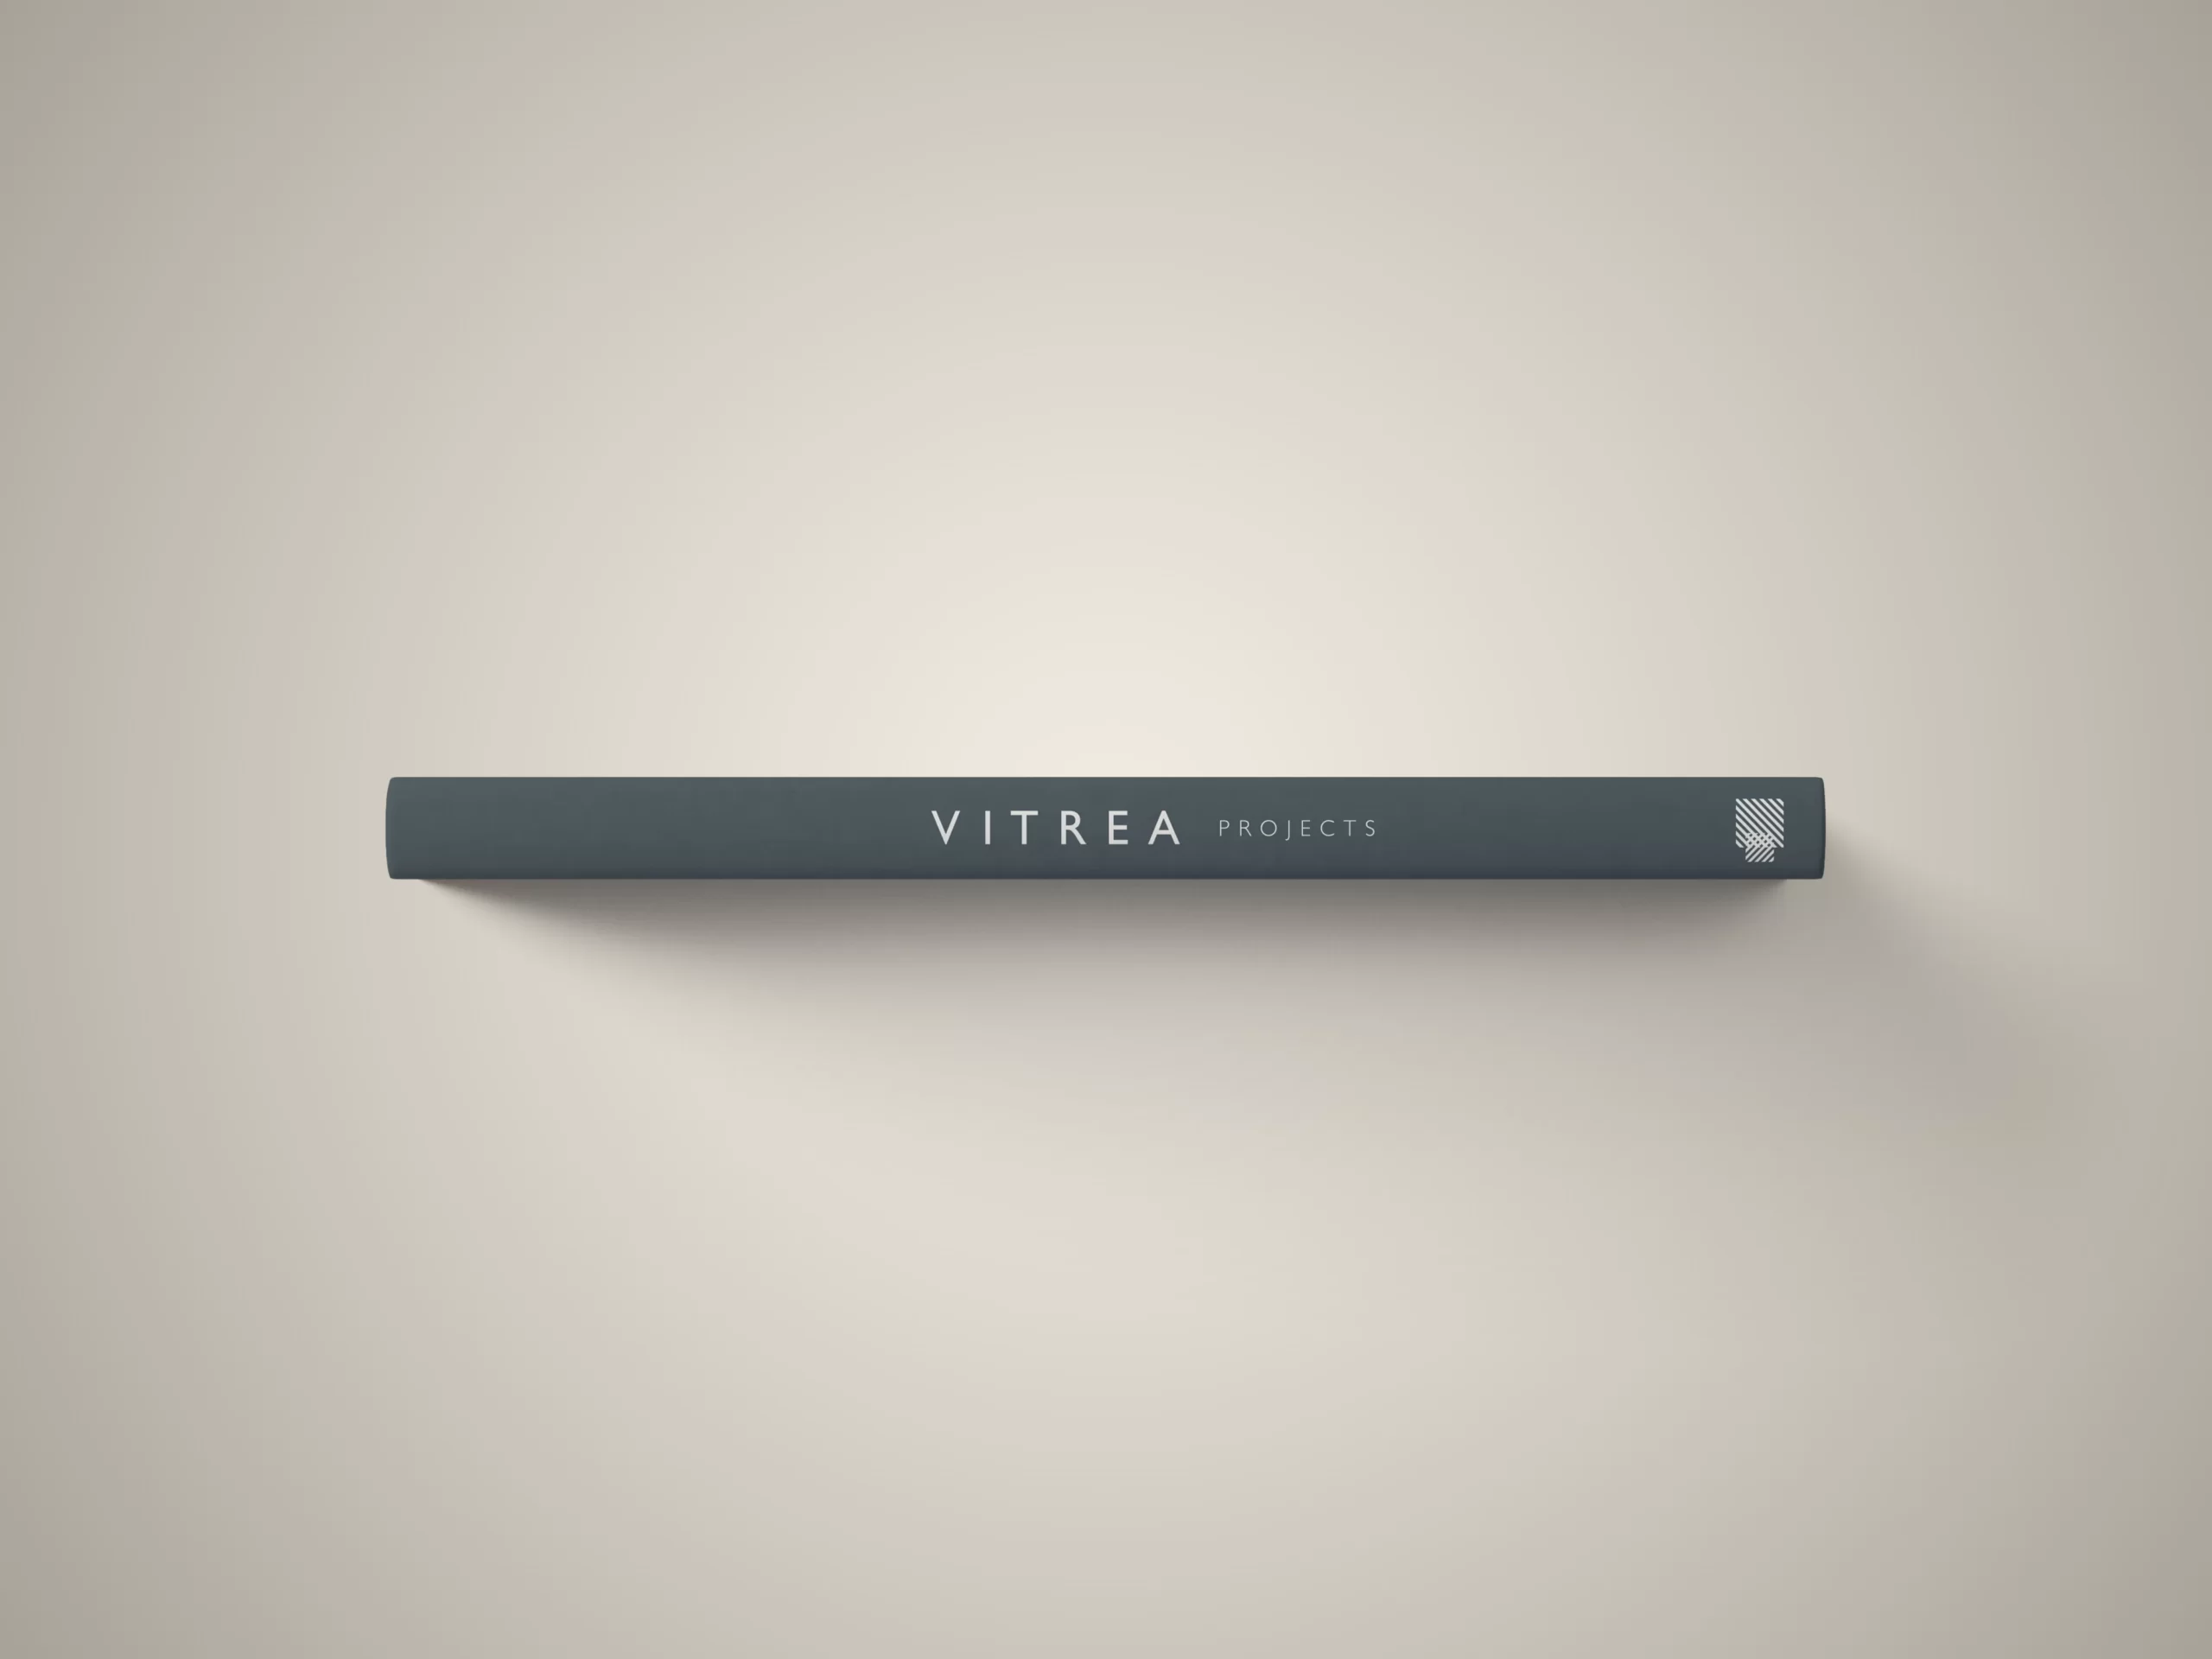 Vitrea Projects